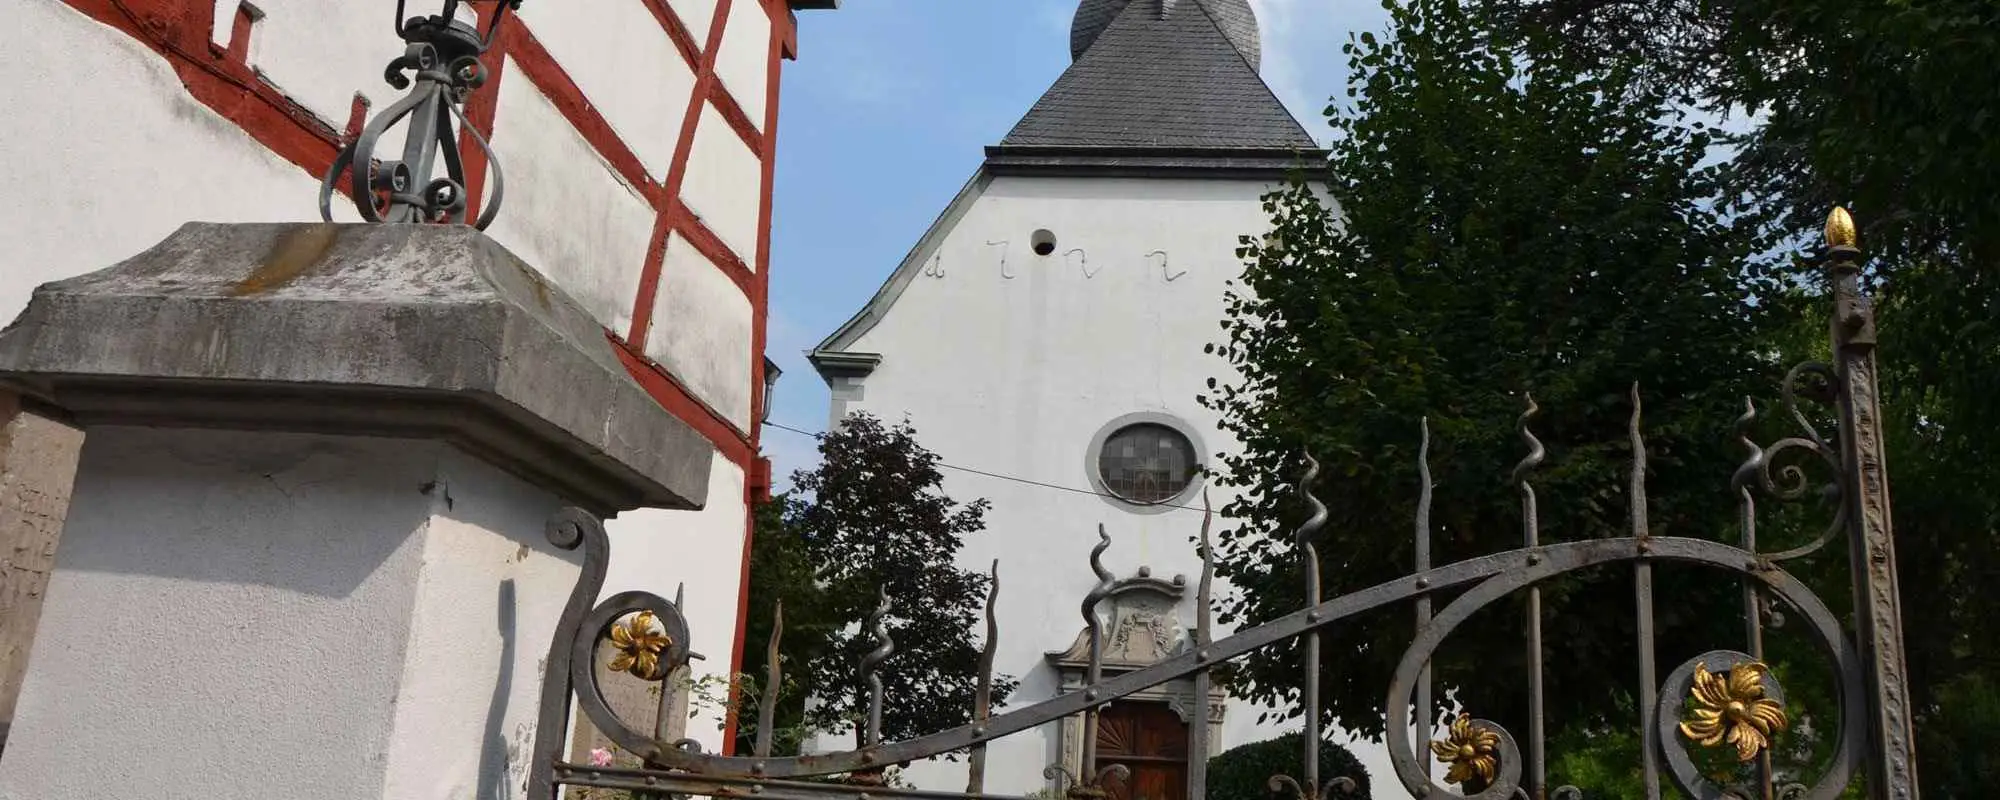 Evangelische Kirche Oberwinter